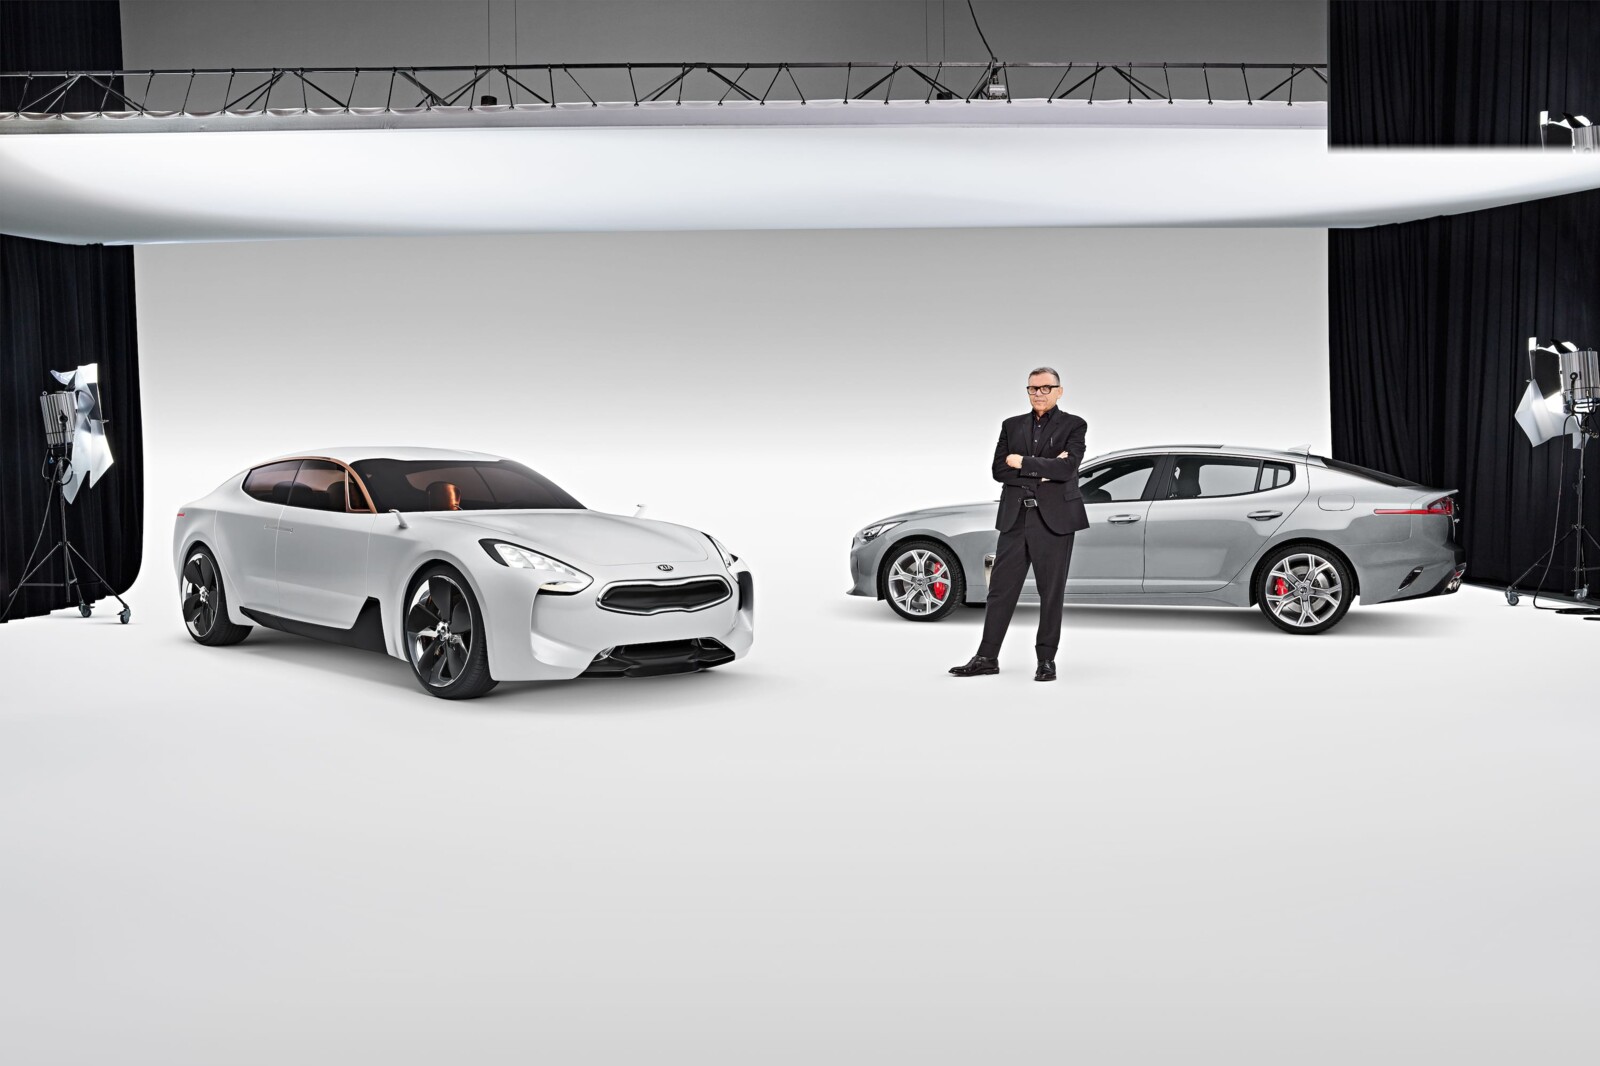 Herzensprojekt: Die Arbeit am Kia Stinger (rechts) begann mit dem Kia GT Concept (links) in 2011. Mit seinem Transaxle-Antriebskonzept und dem Fastback-Design war es ein sehr untypisches Versprechen der koreanischen Marke, das 2017 schließlich eingelöst wurde.